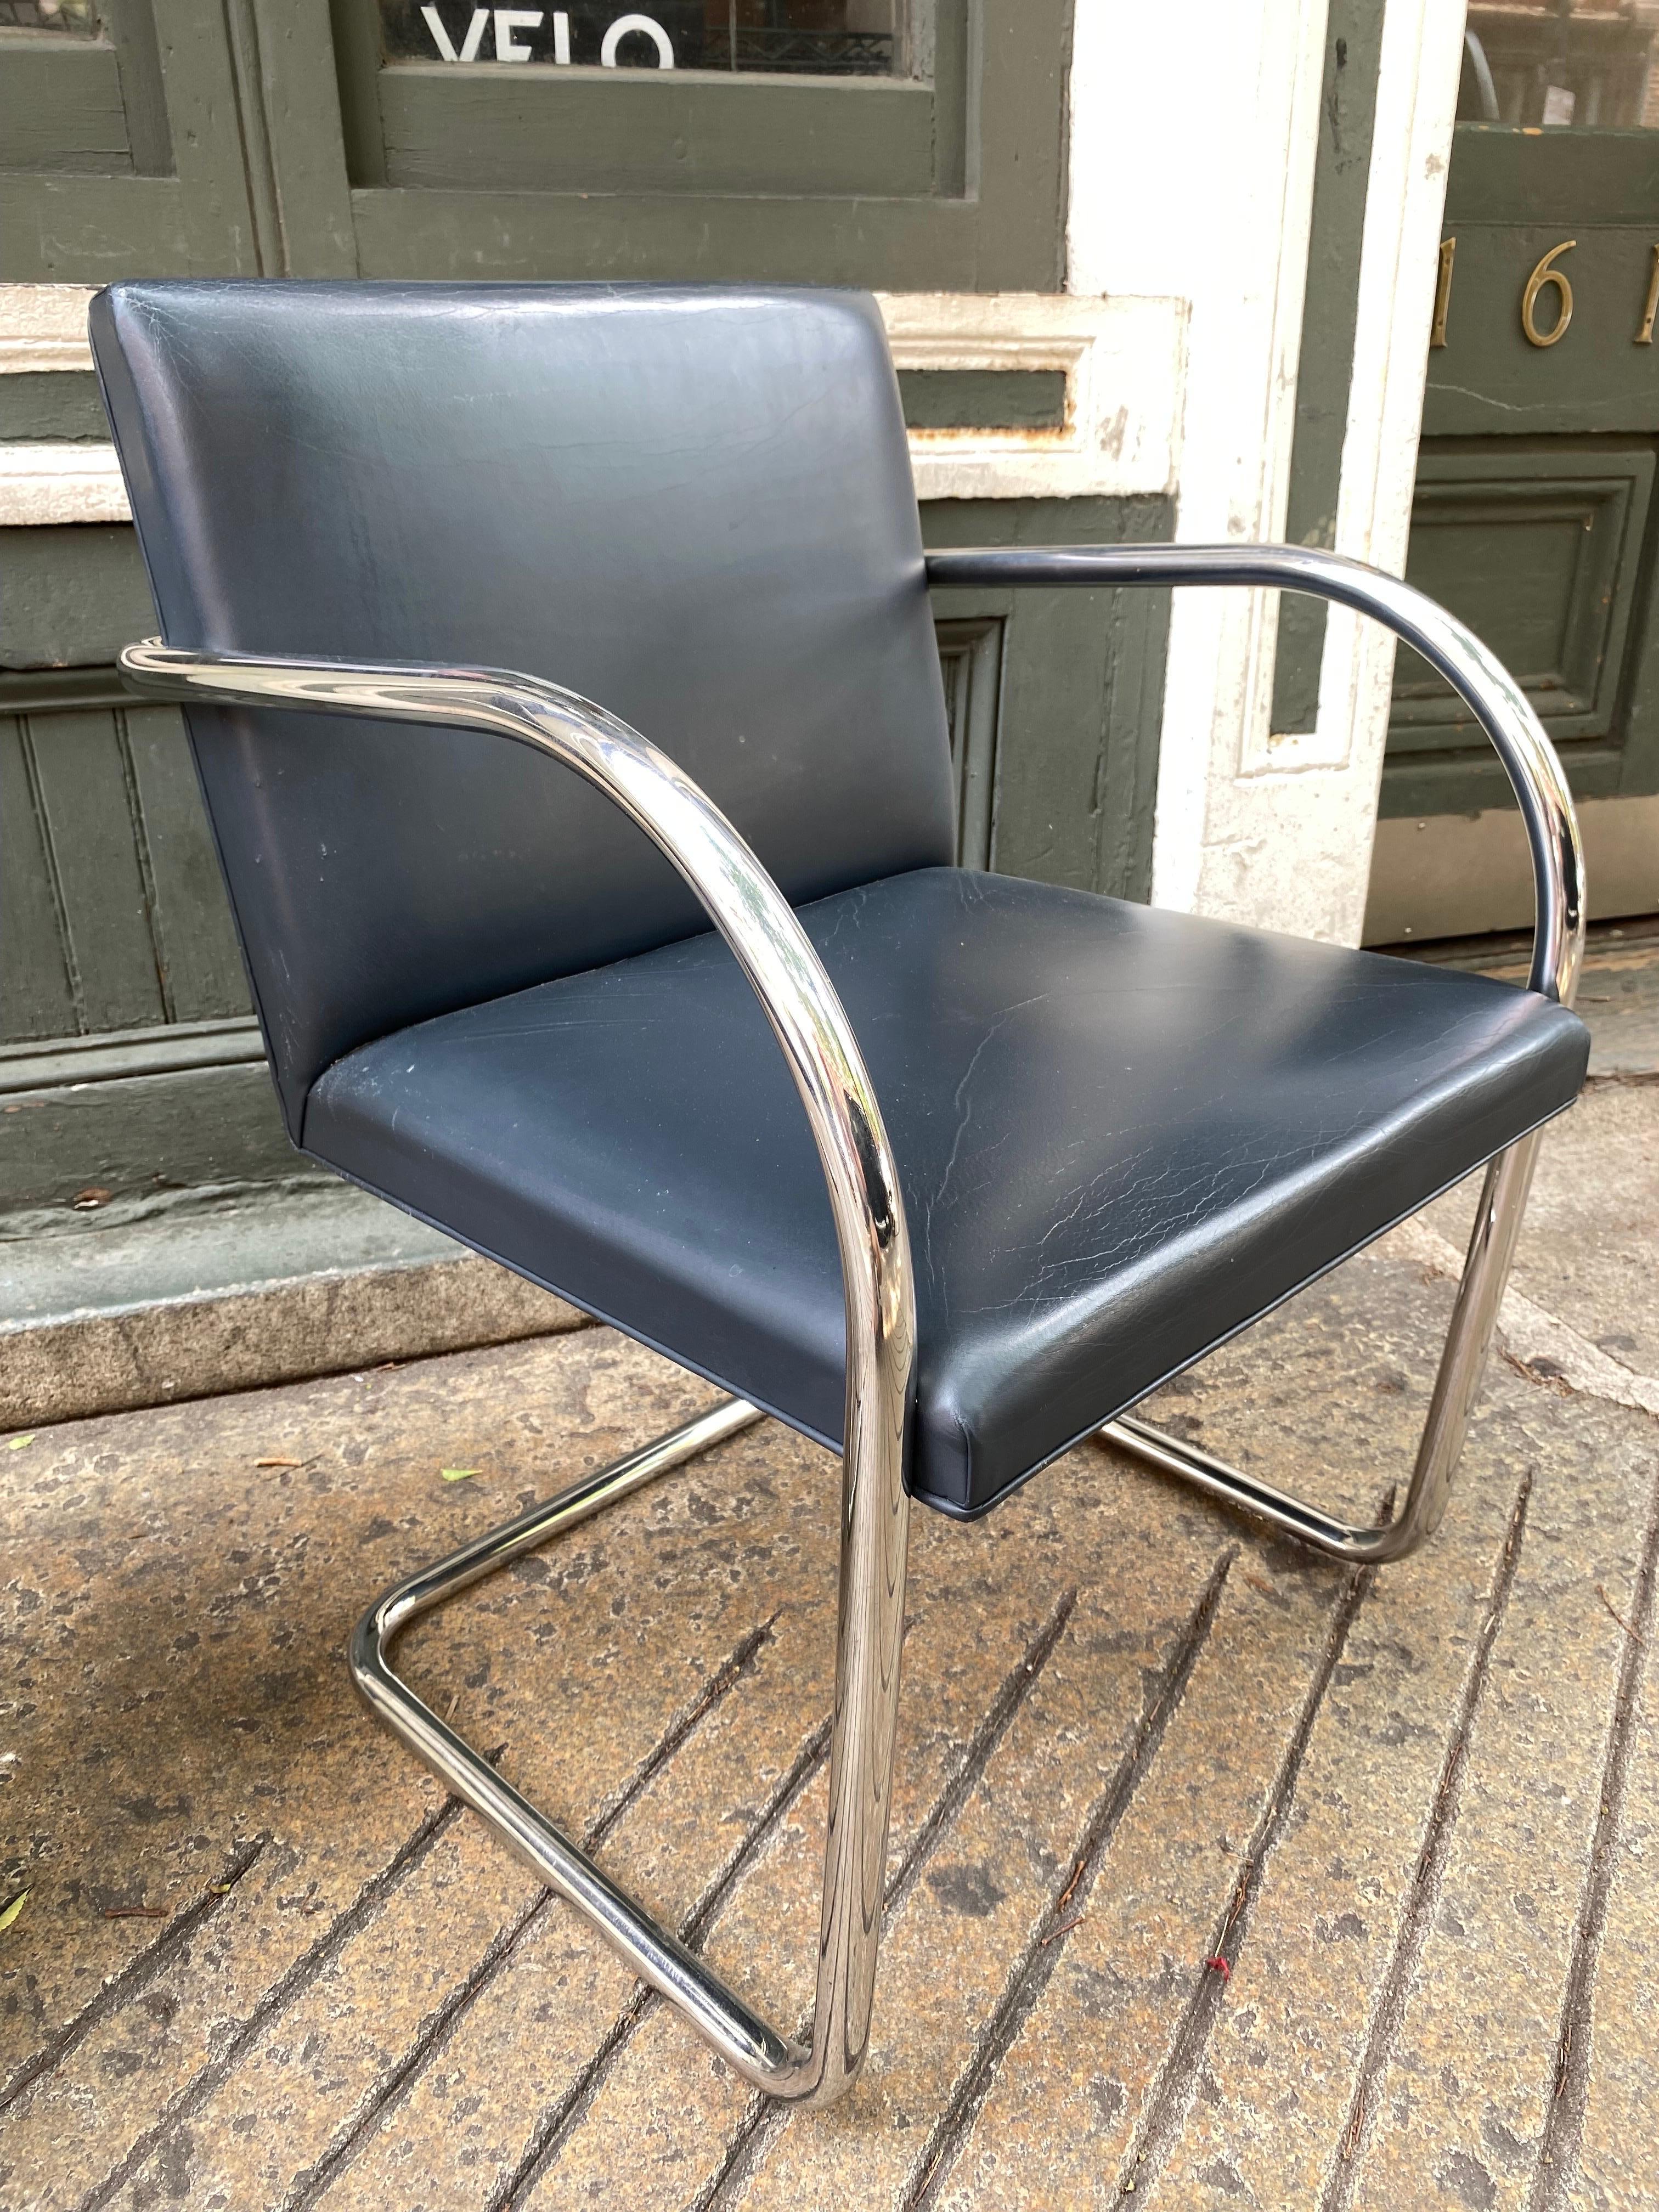 Mies van der Rohe Tubular Brno Chair, 2 Stück erhältlich, Preis separat. Chrom ist super sauber, Leder zeigt Abnutzung und Risse. Die Stühle stammen aus den 1980er Jahren und sind mit Labels von Knoll versehen. Verwenden Sie es so, wie es ist, oder